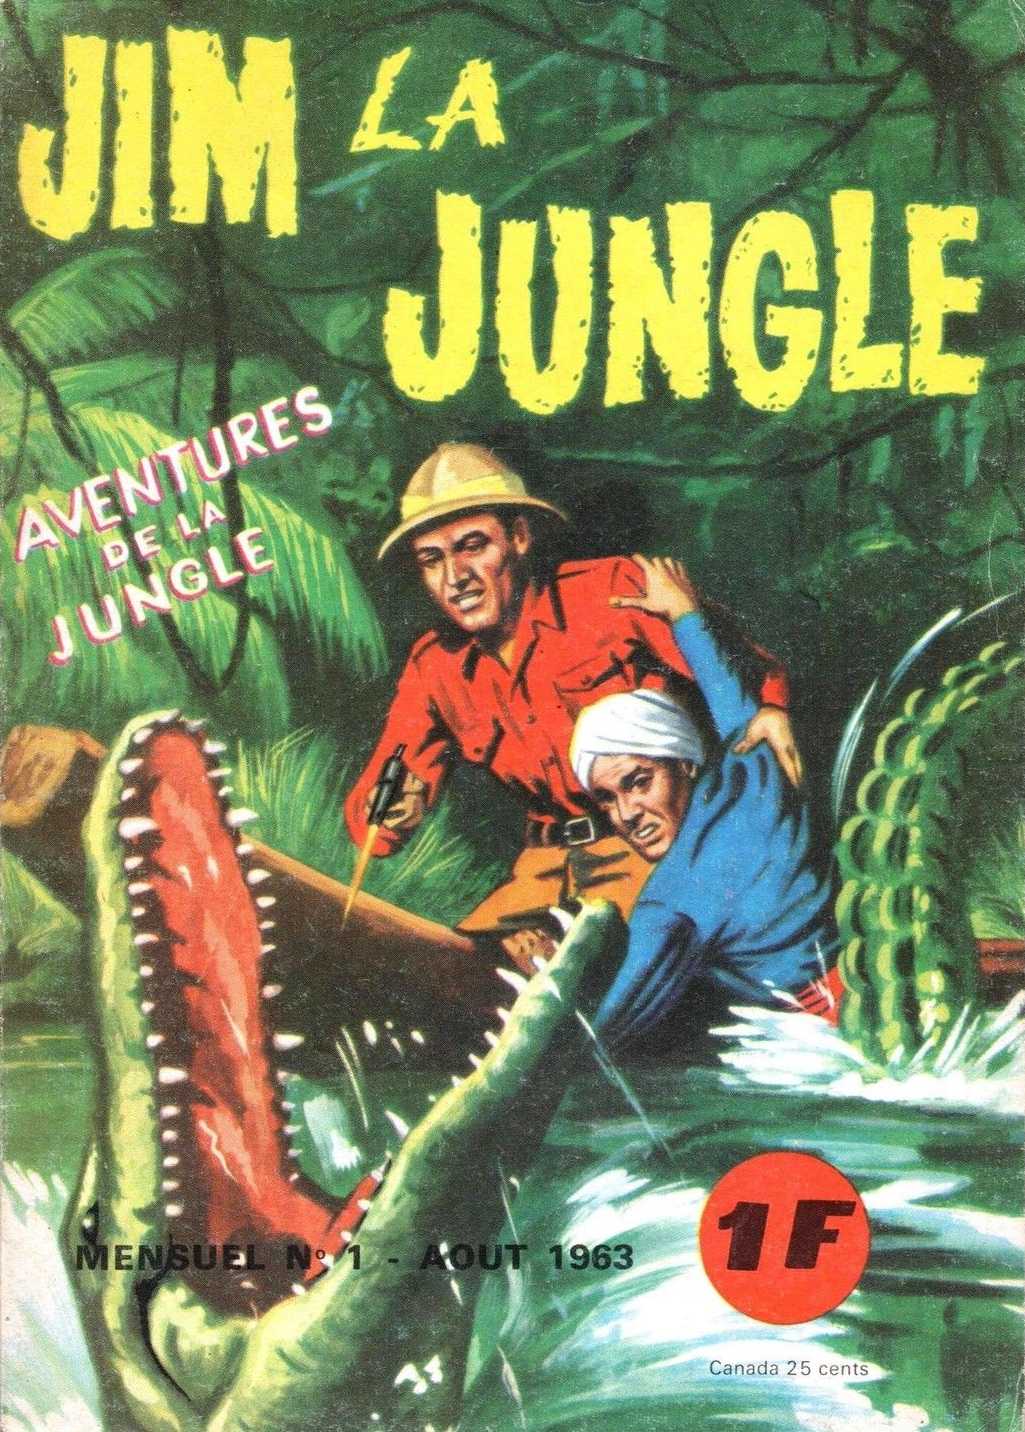 Scan Jim La Jungle